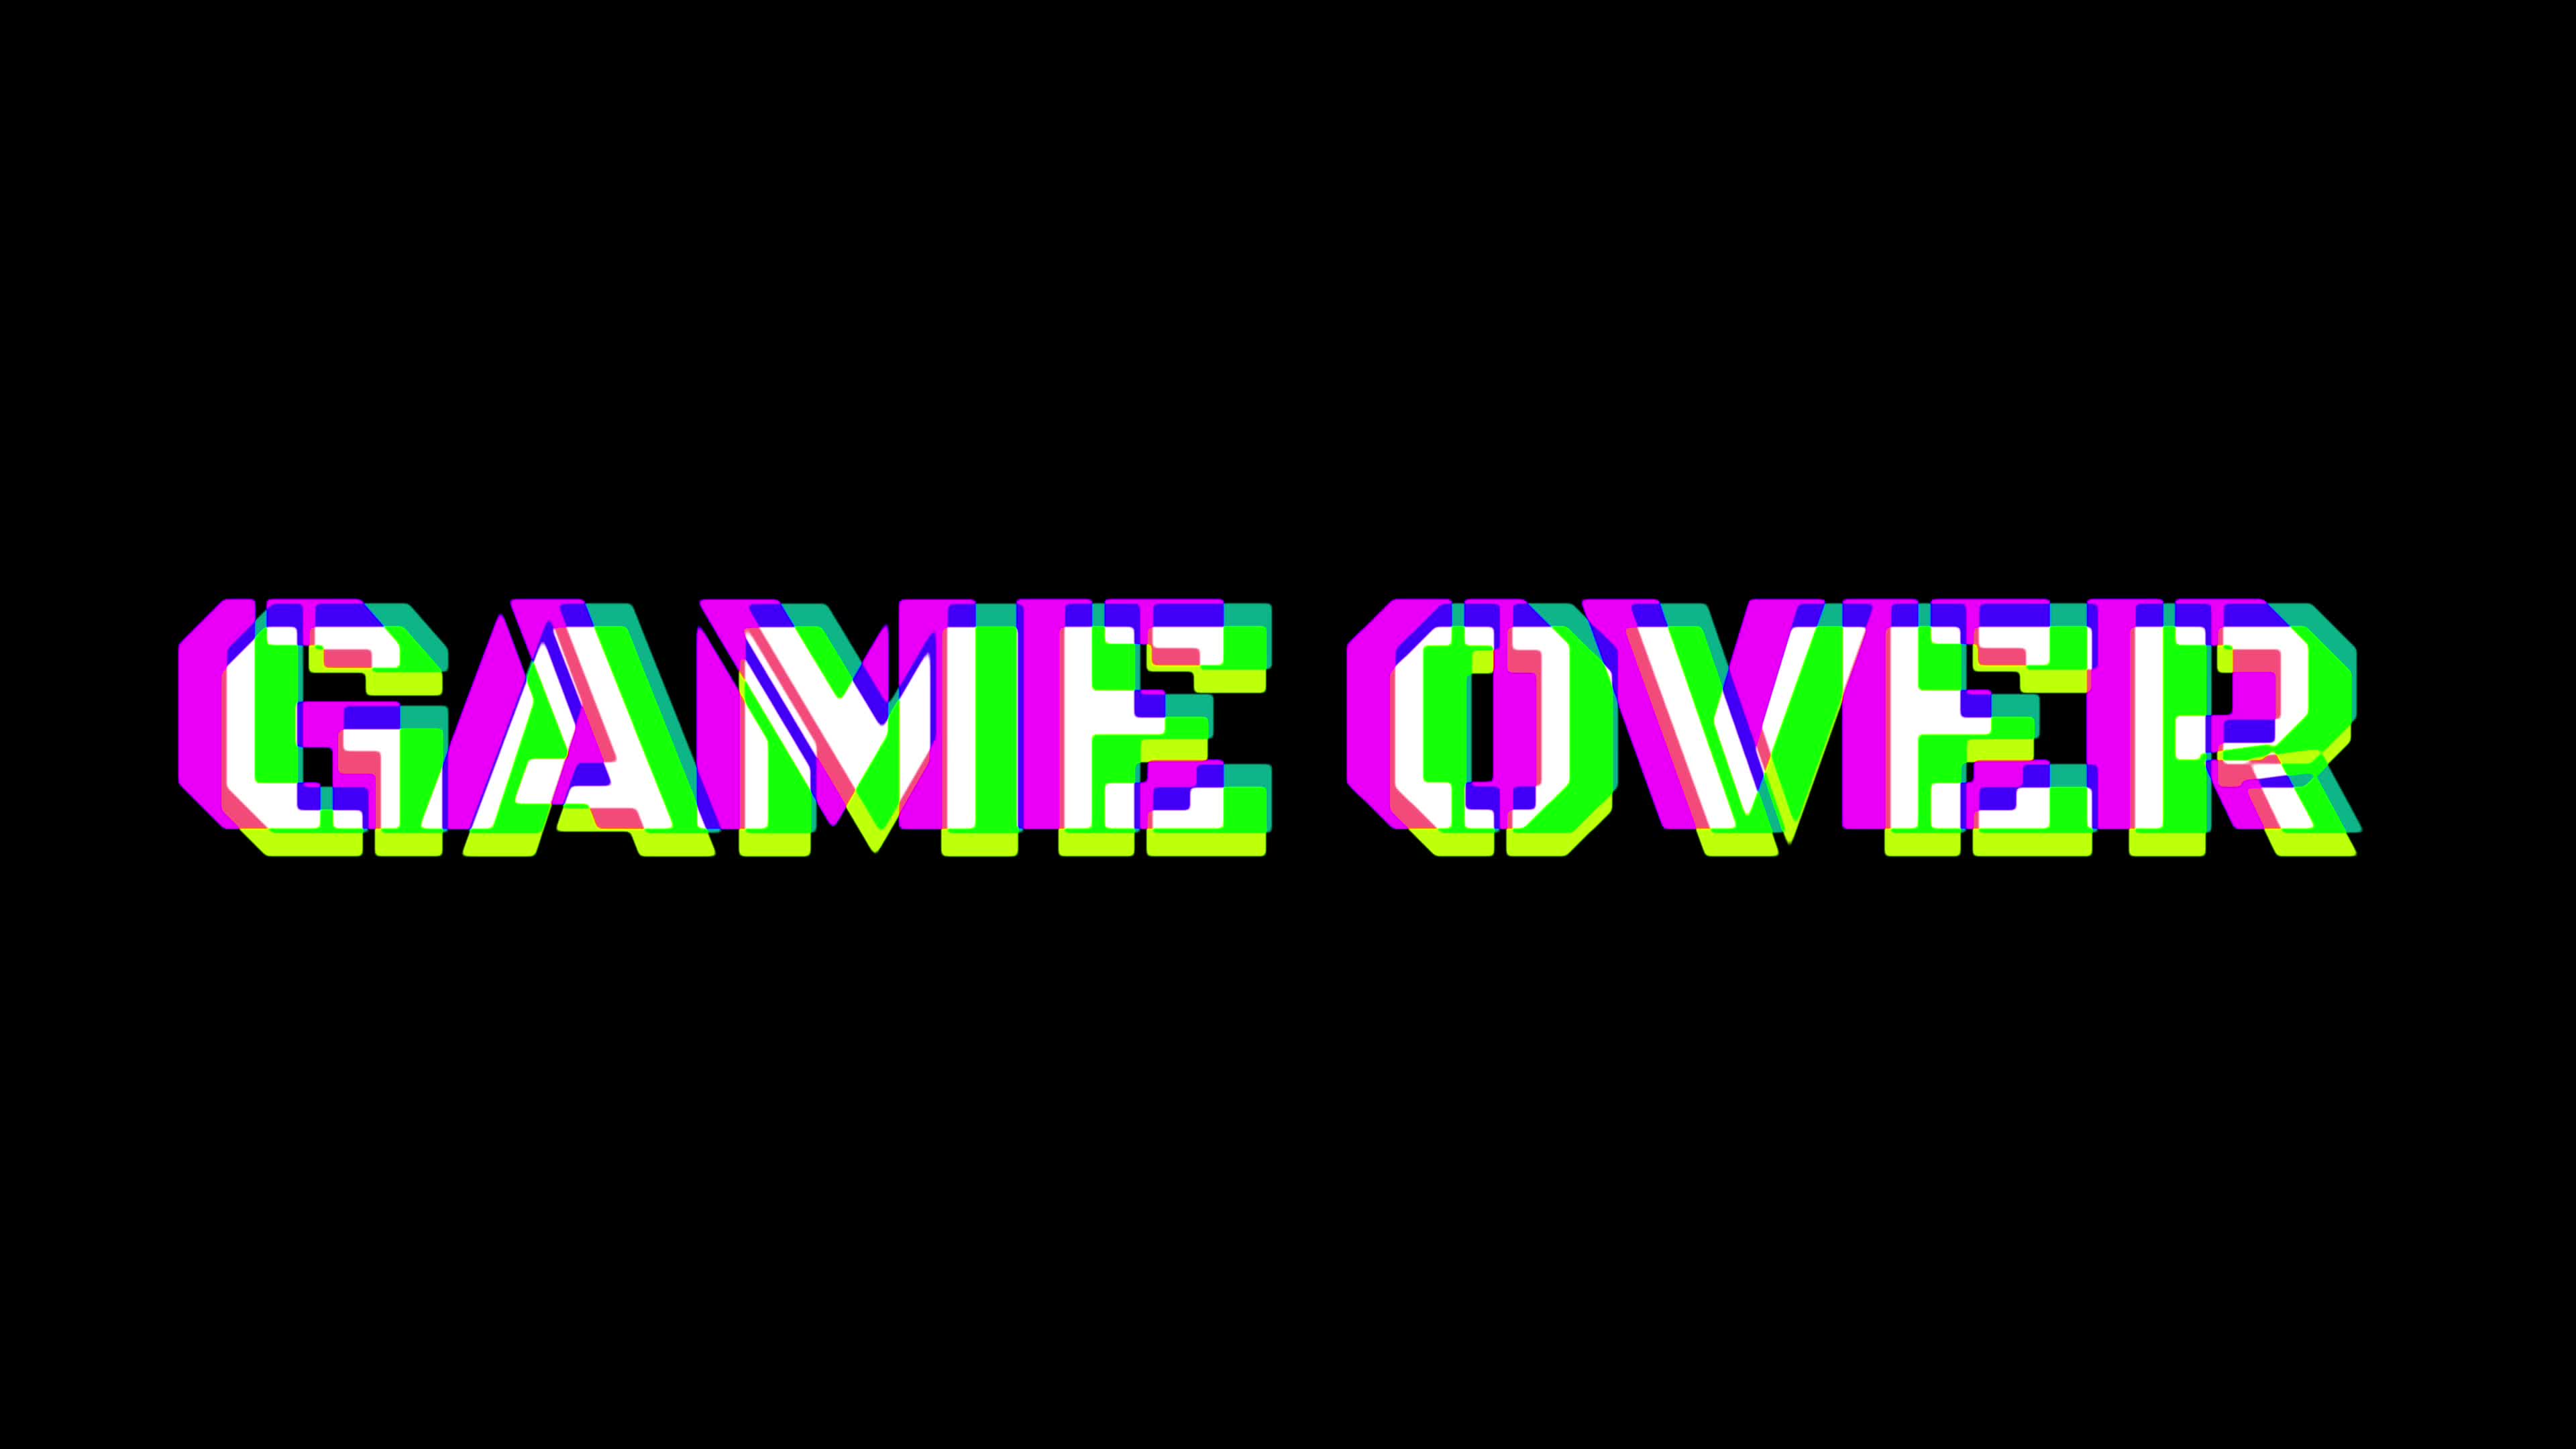 Màn hình Game Over 4k đầy màu sắc sẽ đưa bạn đến một thế giới game đầy màu sắc và bất ngờ. Cùng trải nghiệm những điều thú vị và tuyệt vời nhất của trò chơi này.